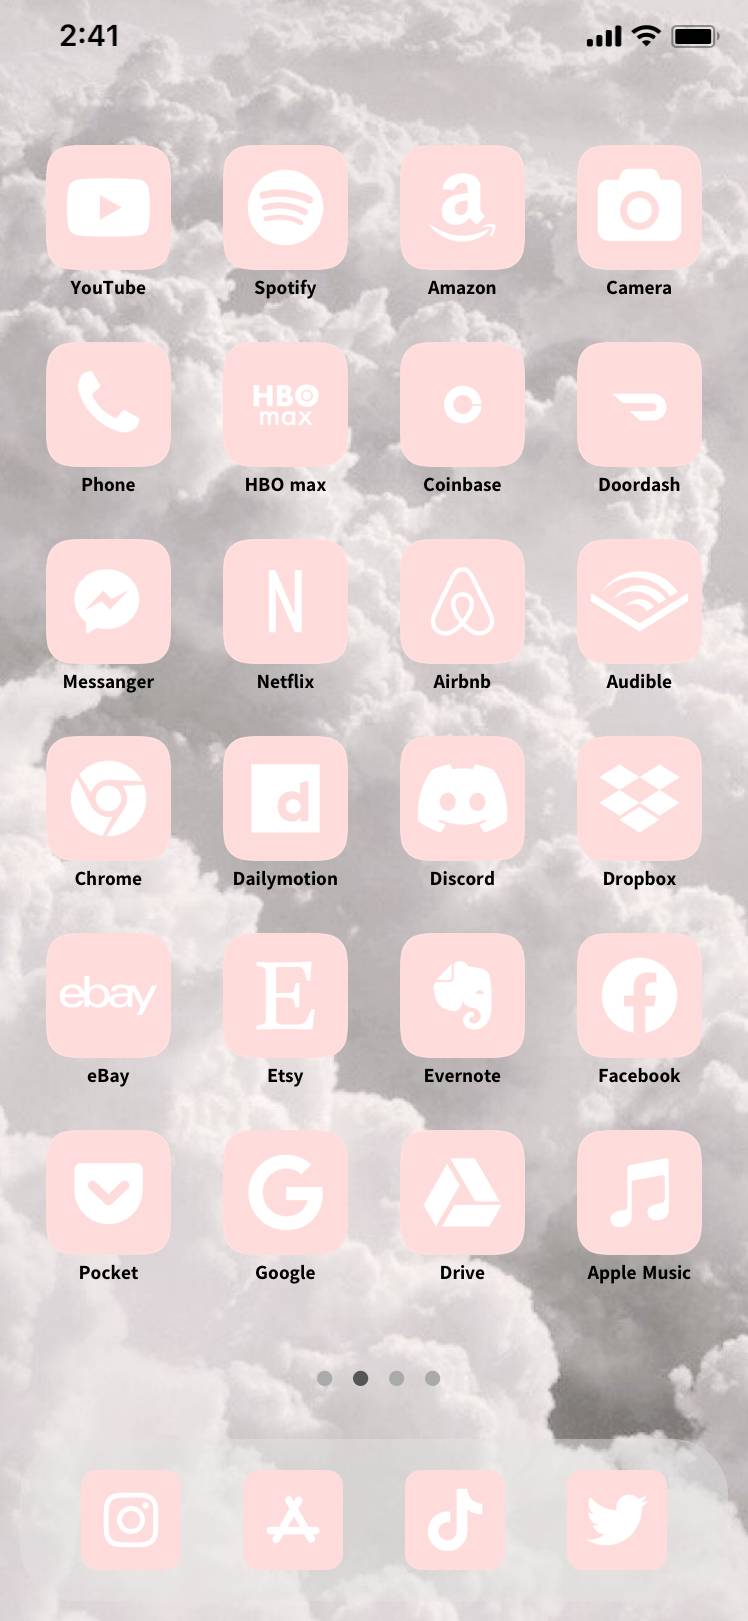 pink, whiteИдеи за начален екран[V2cf8Ny3ORXbJYxkTUaf]